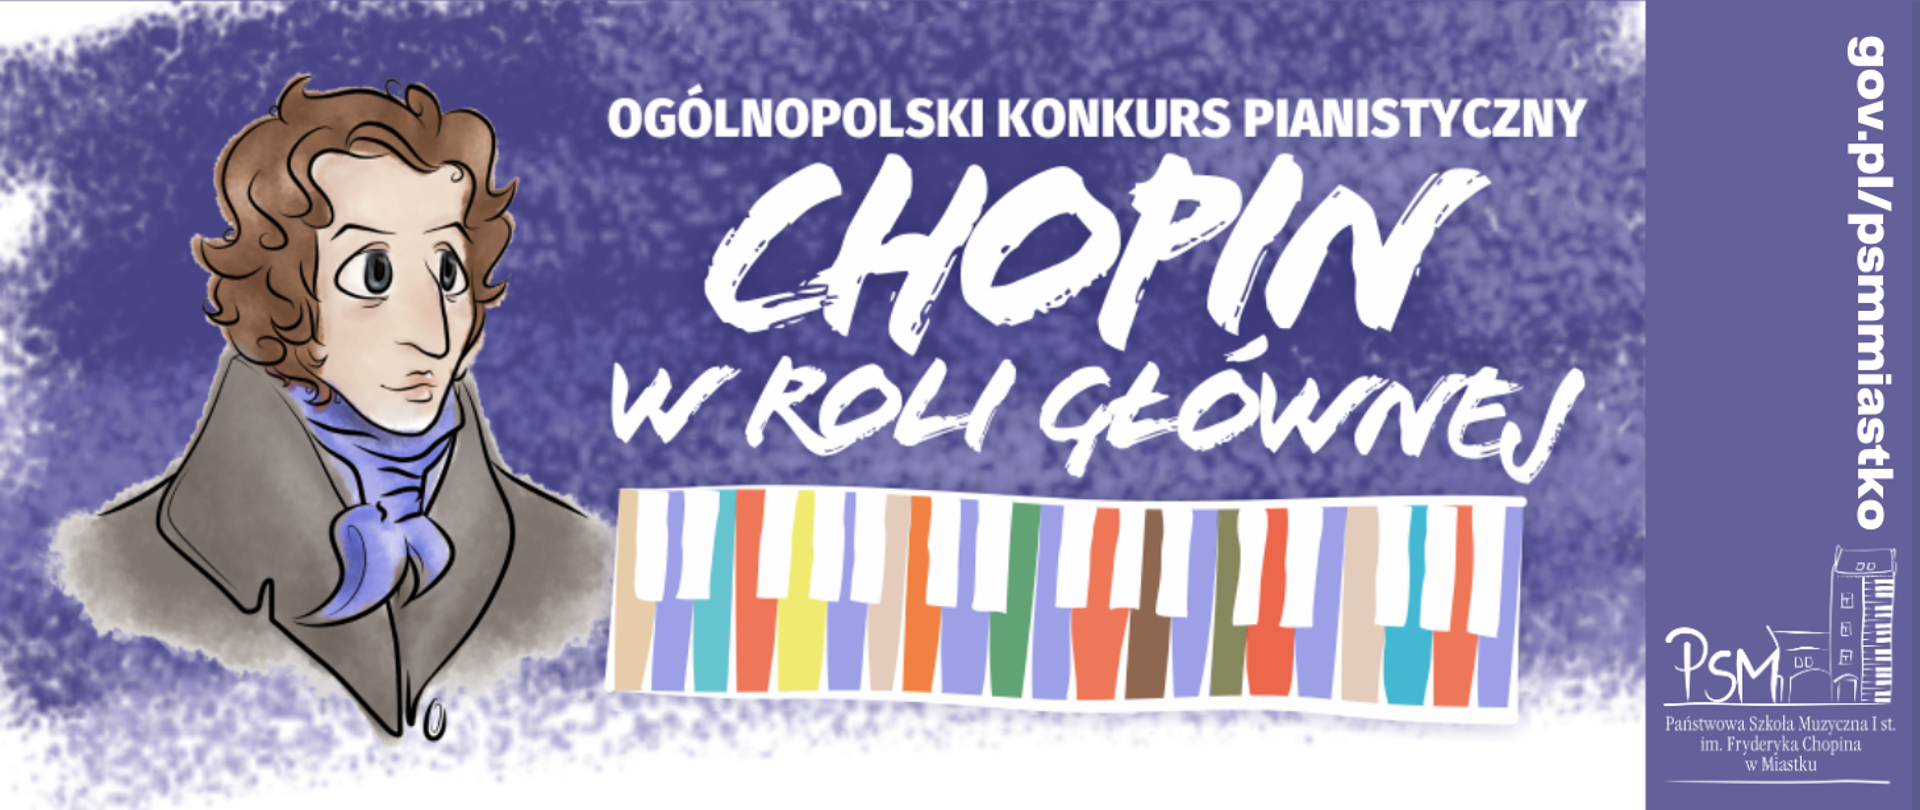 Grafika informująca o Ogólnopolskim Konkursie Pianistycznym "Chopin w roli głównej"